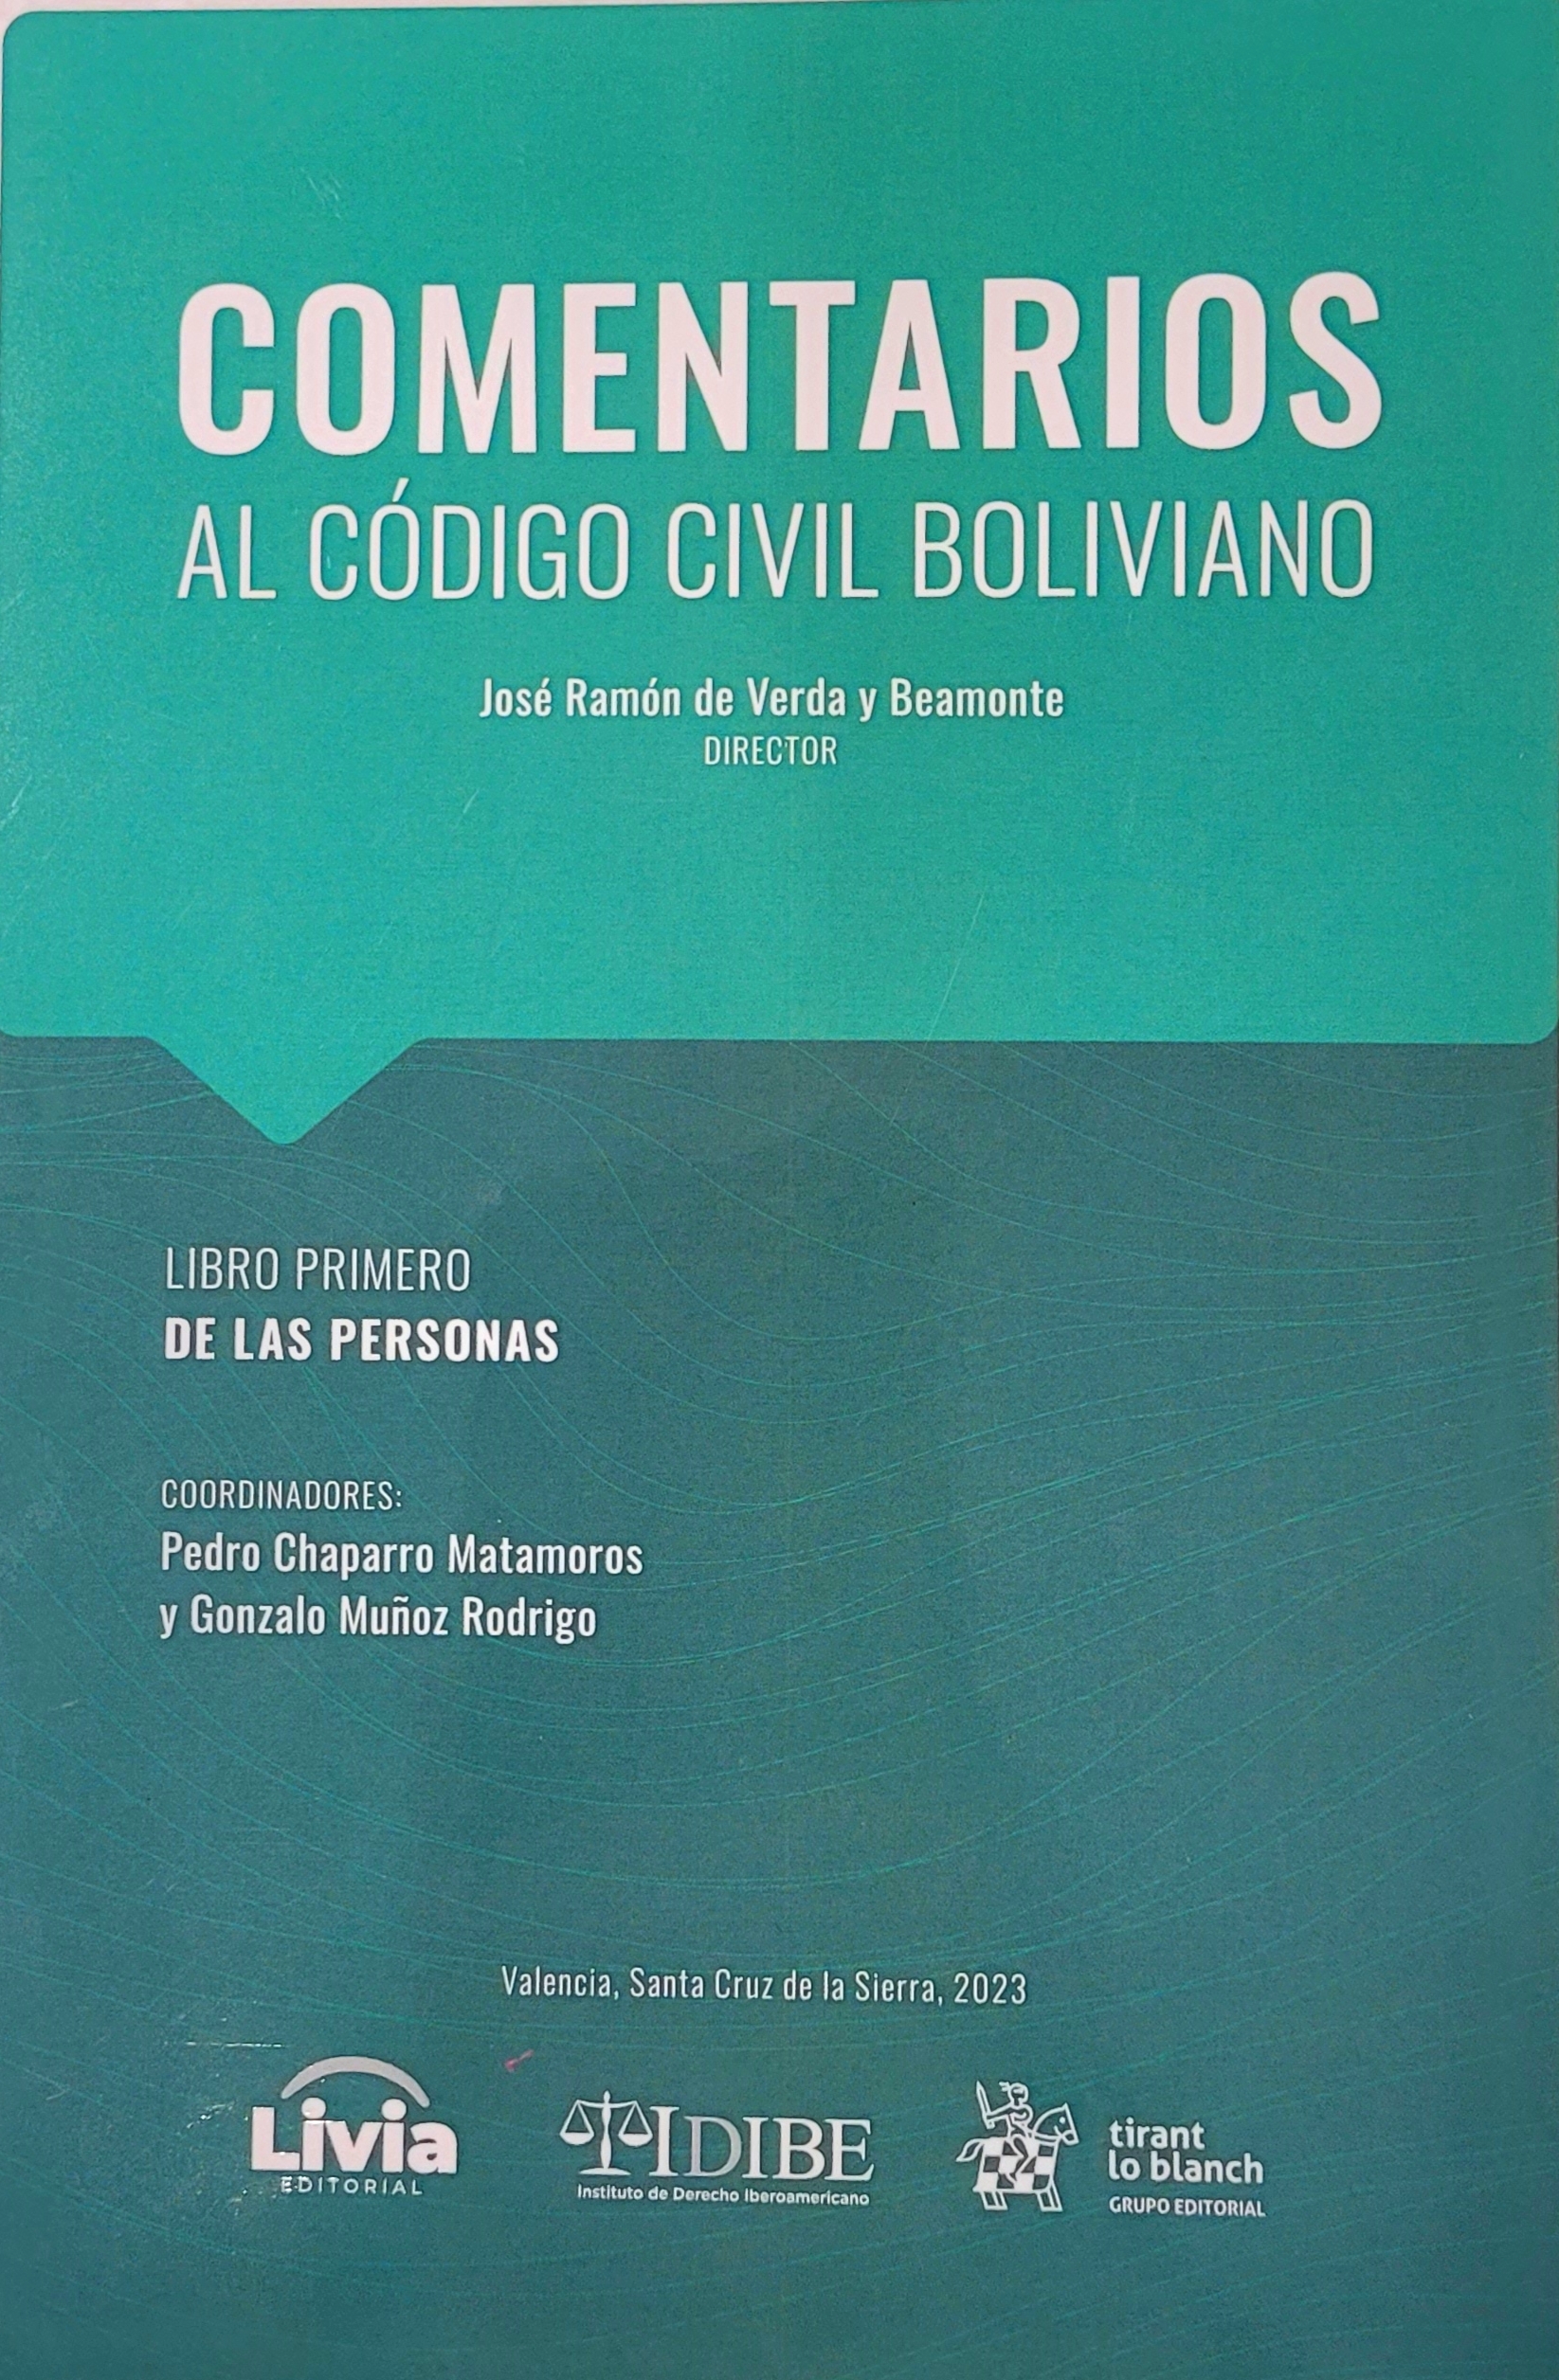 Imagen de portada del libro Comentarios al Código civil boliviano